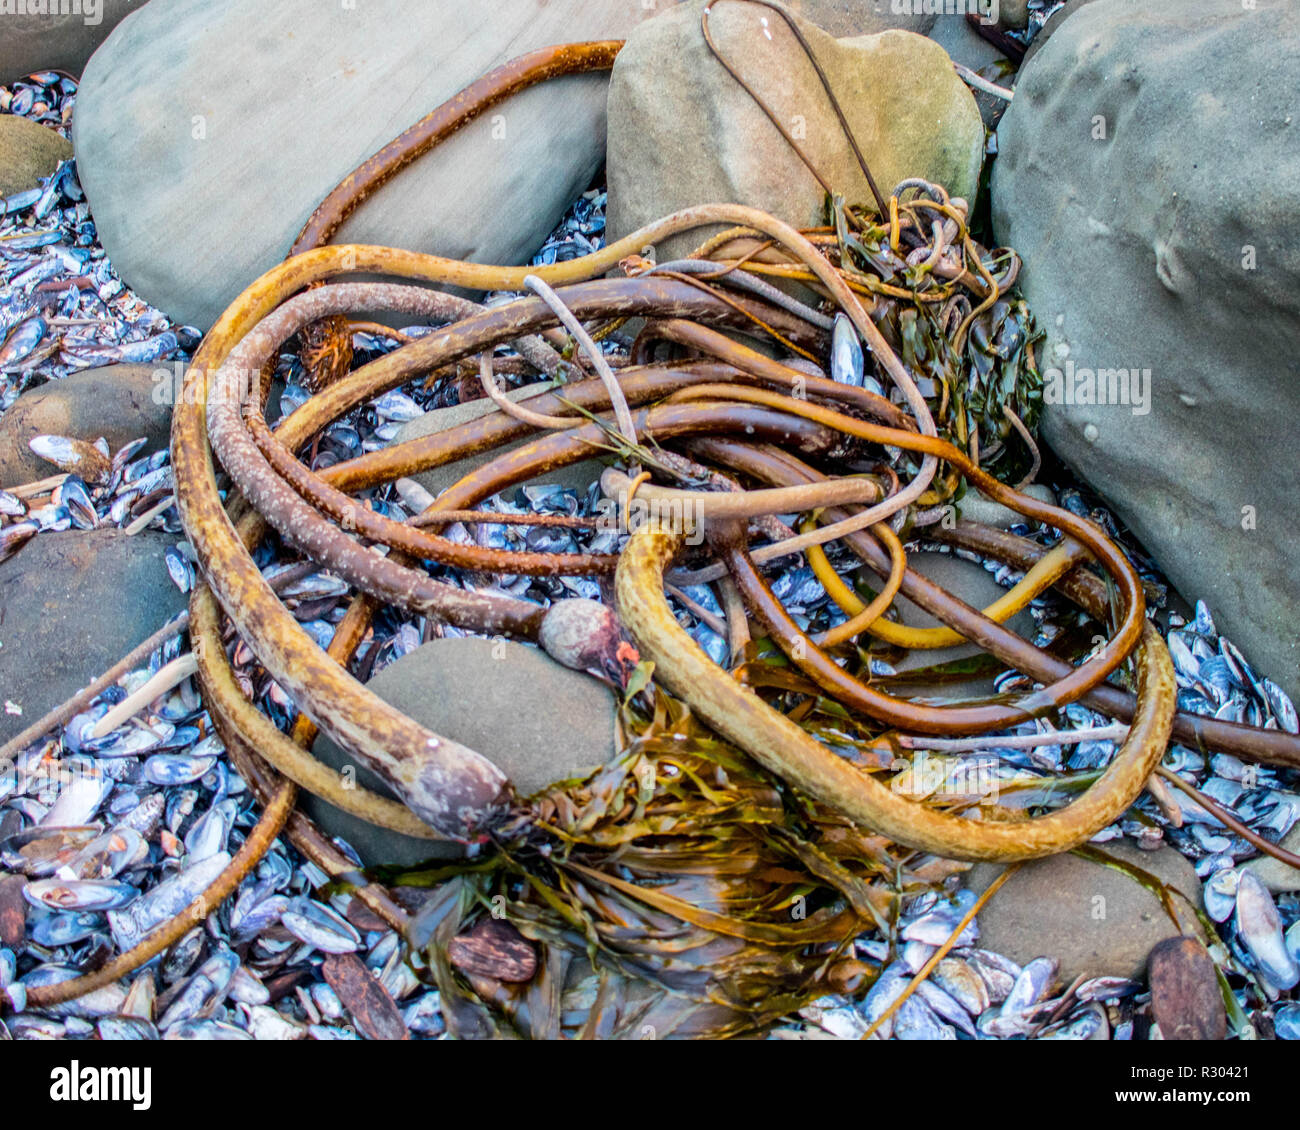 Ein Haufen von Seetang ist an Land bei Flut in einer felsigen Bucht in der Nähe von Coos Bay, Oregon gewaschen. Stockfoto